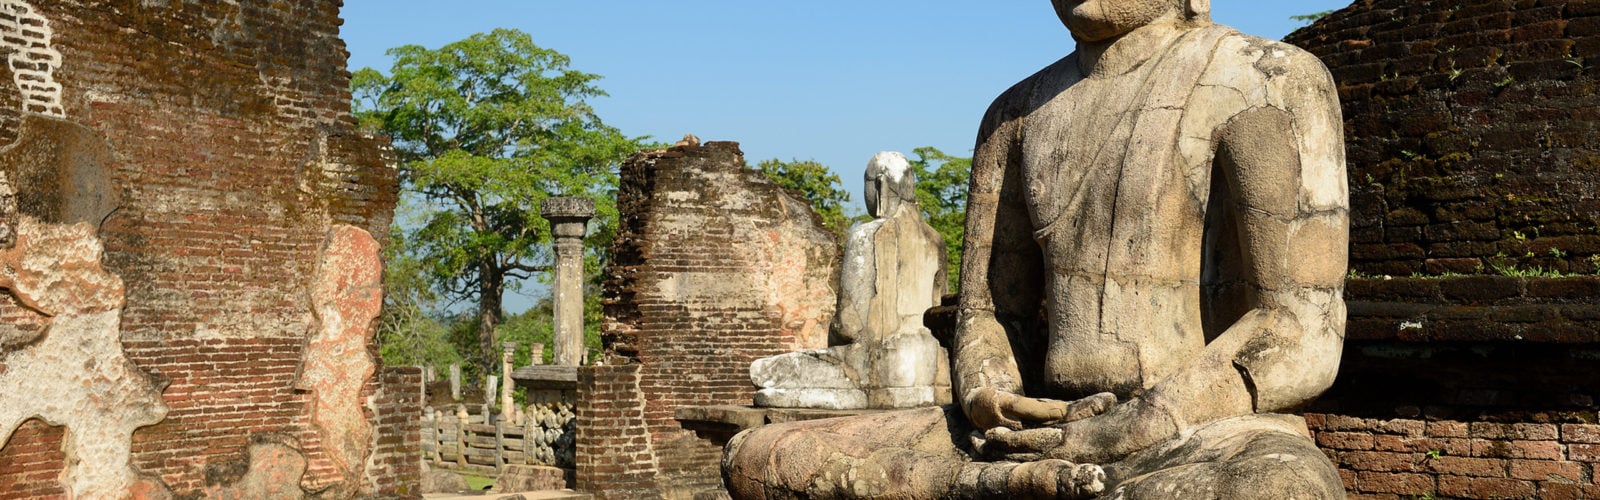 Polonnaruwa-sri-lanka